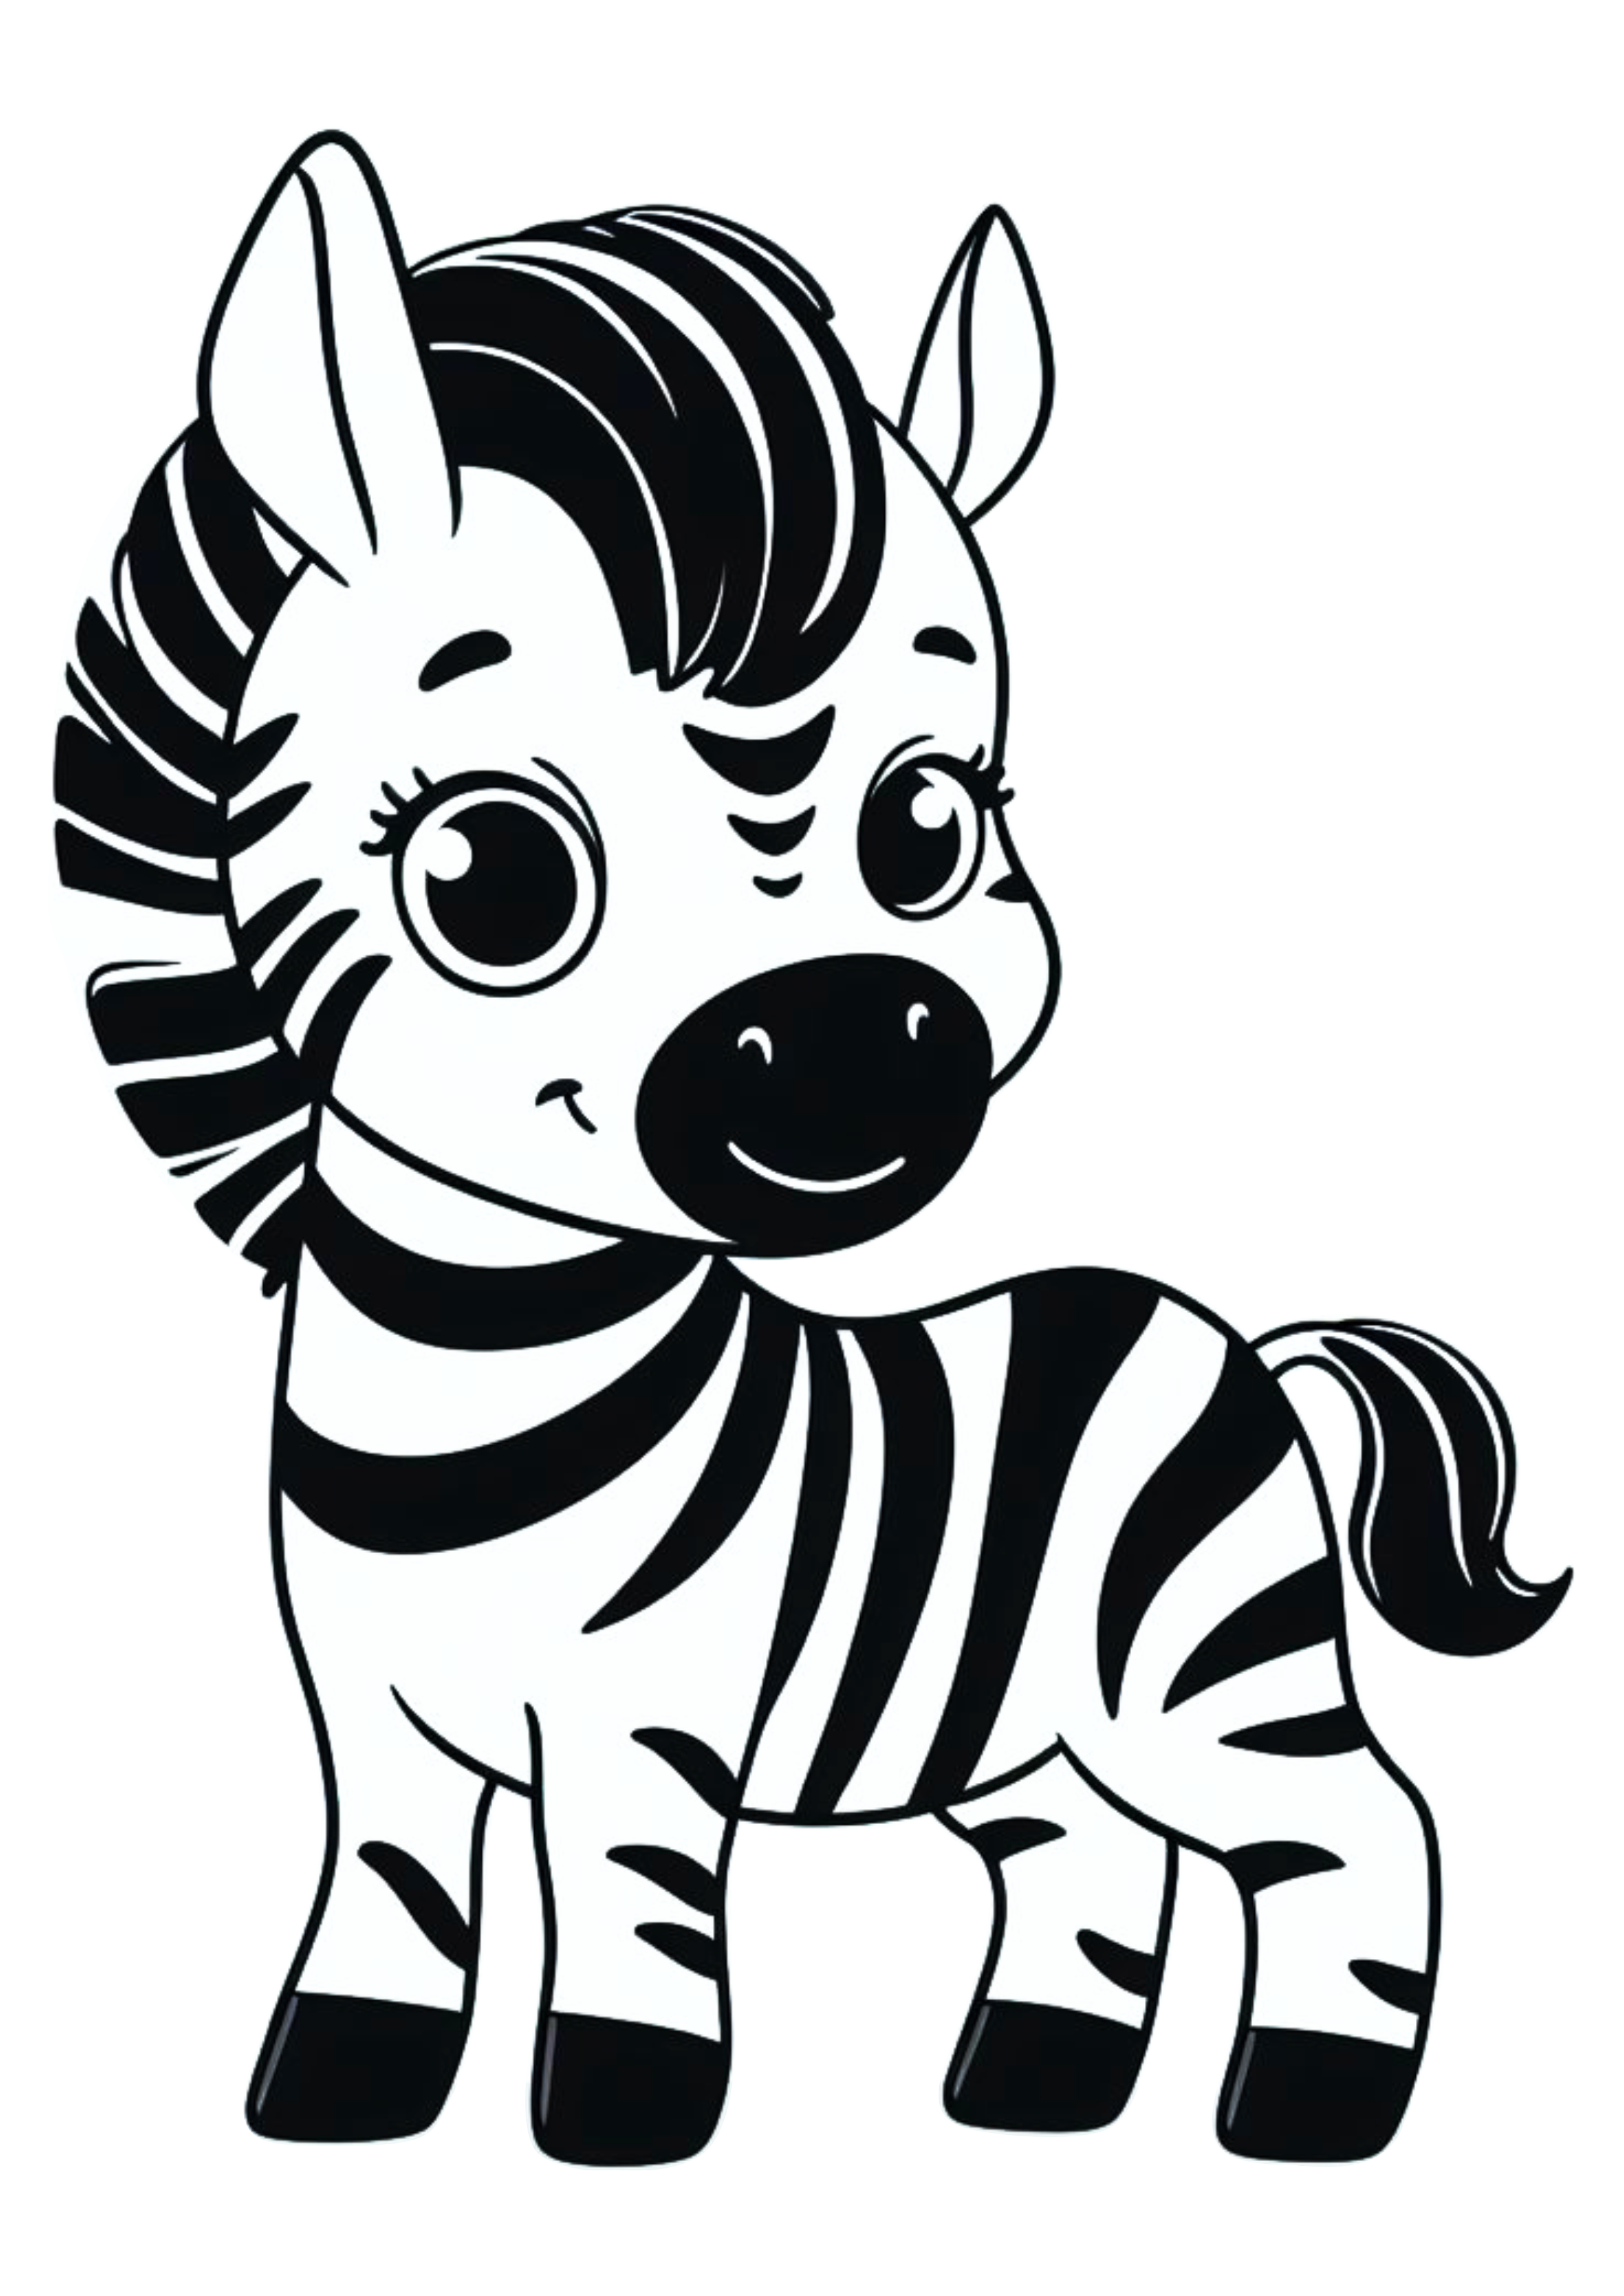 Zebra fofinha png desenho simples safari de animais